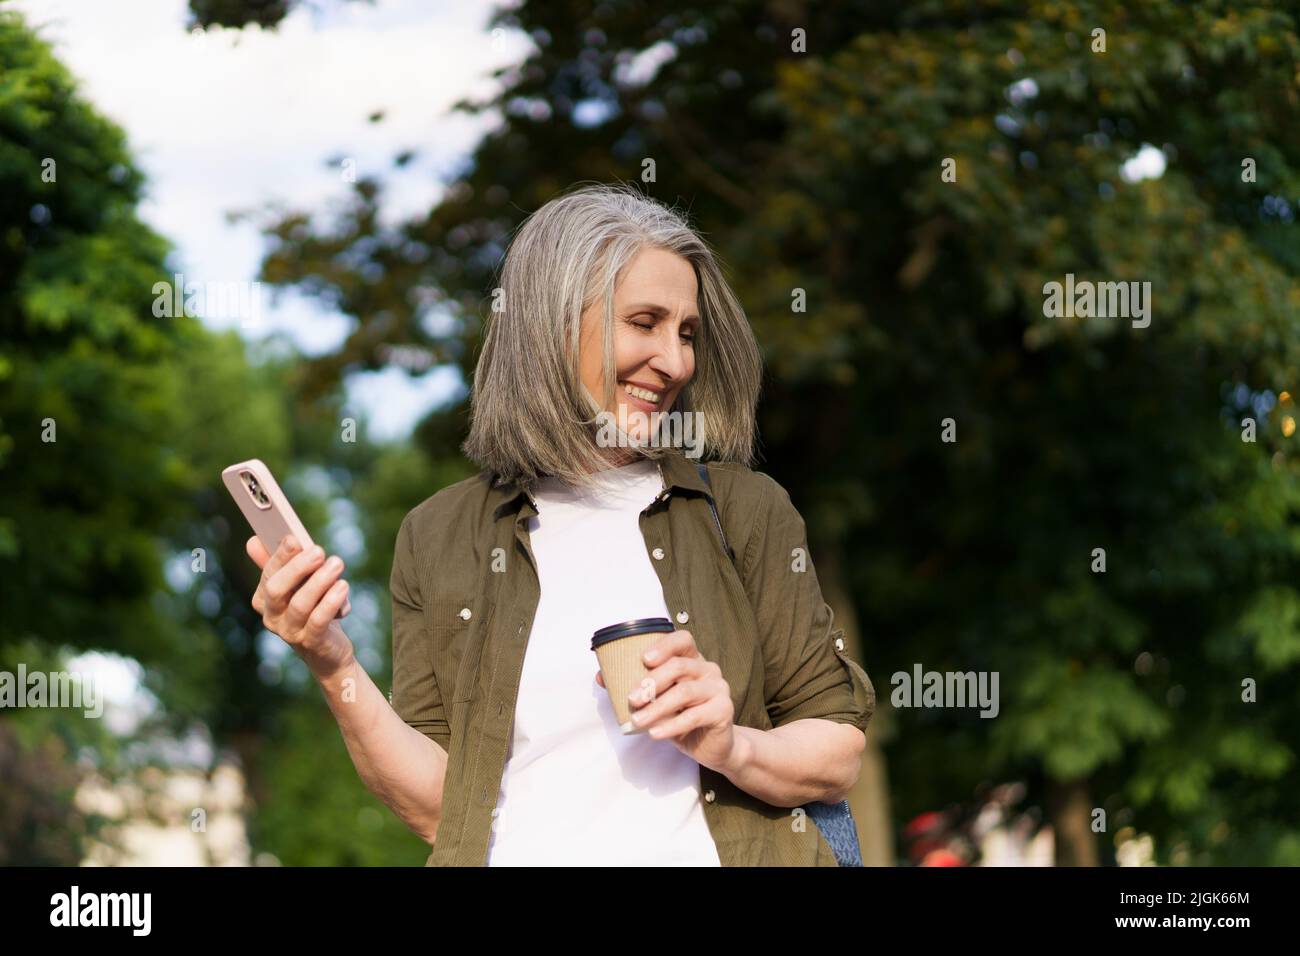 Reife europäische Frau mit grauem Haar freut sich nach der Arbeit oder auf Reisen mit dem Telefon, während sie unterwegs mit einer Papiertasse im Stadtgarten oder Park Kaffee trinkt. Genießen Sie das Leben reife Frau. Stockfoto